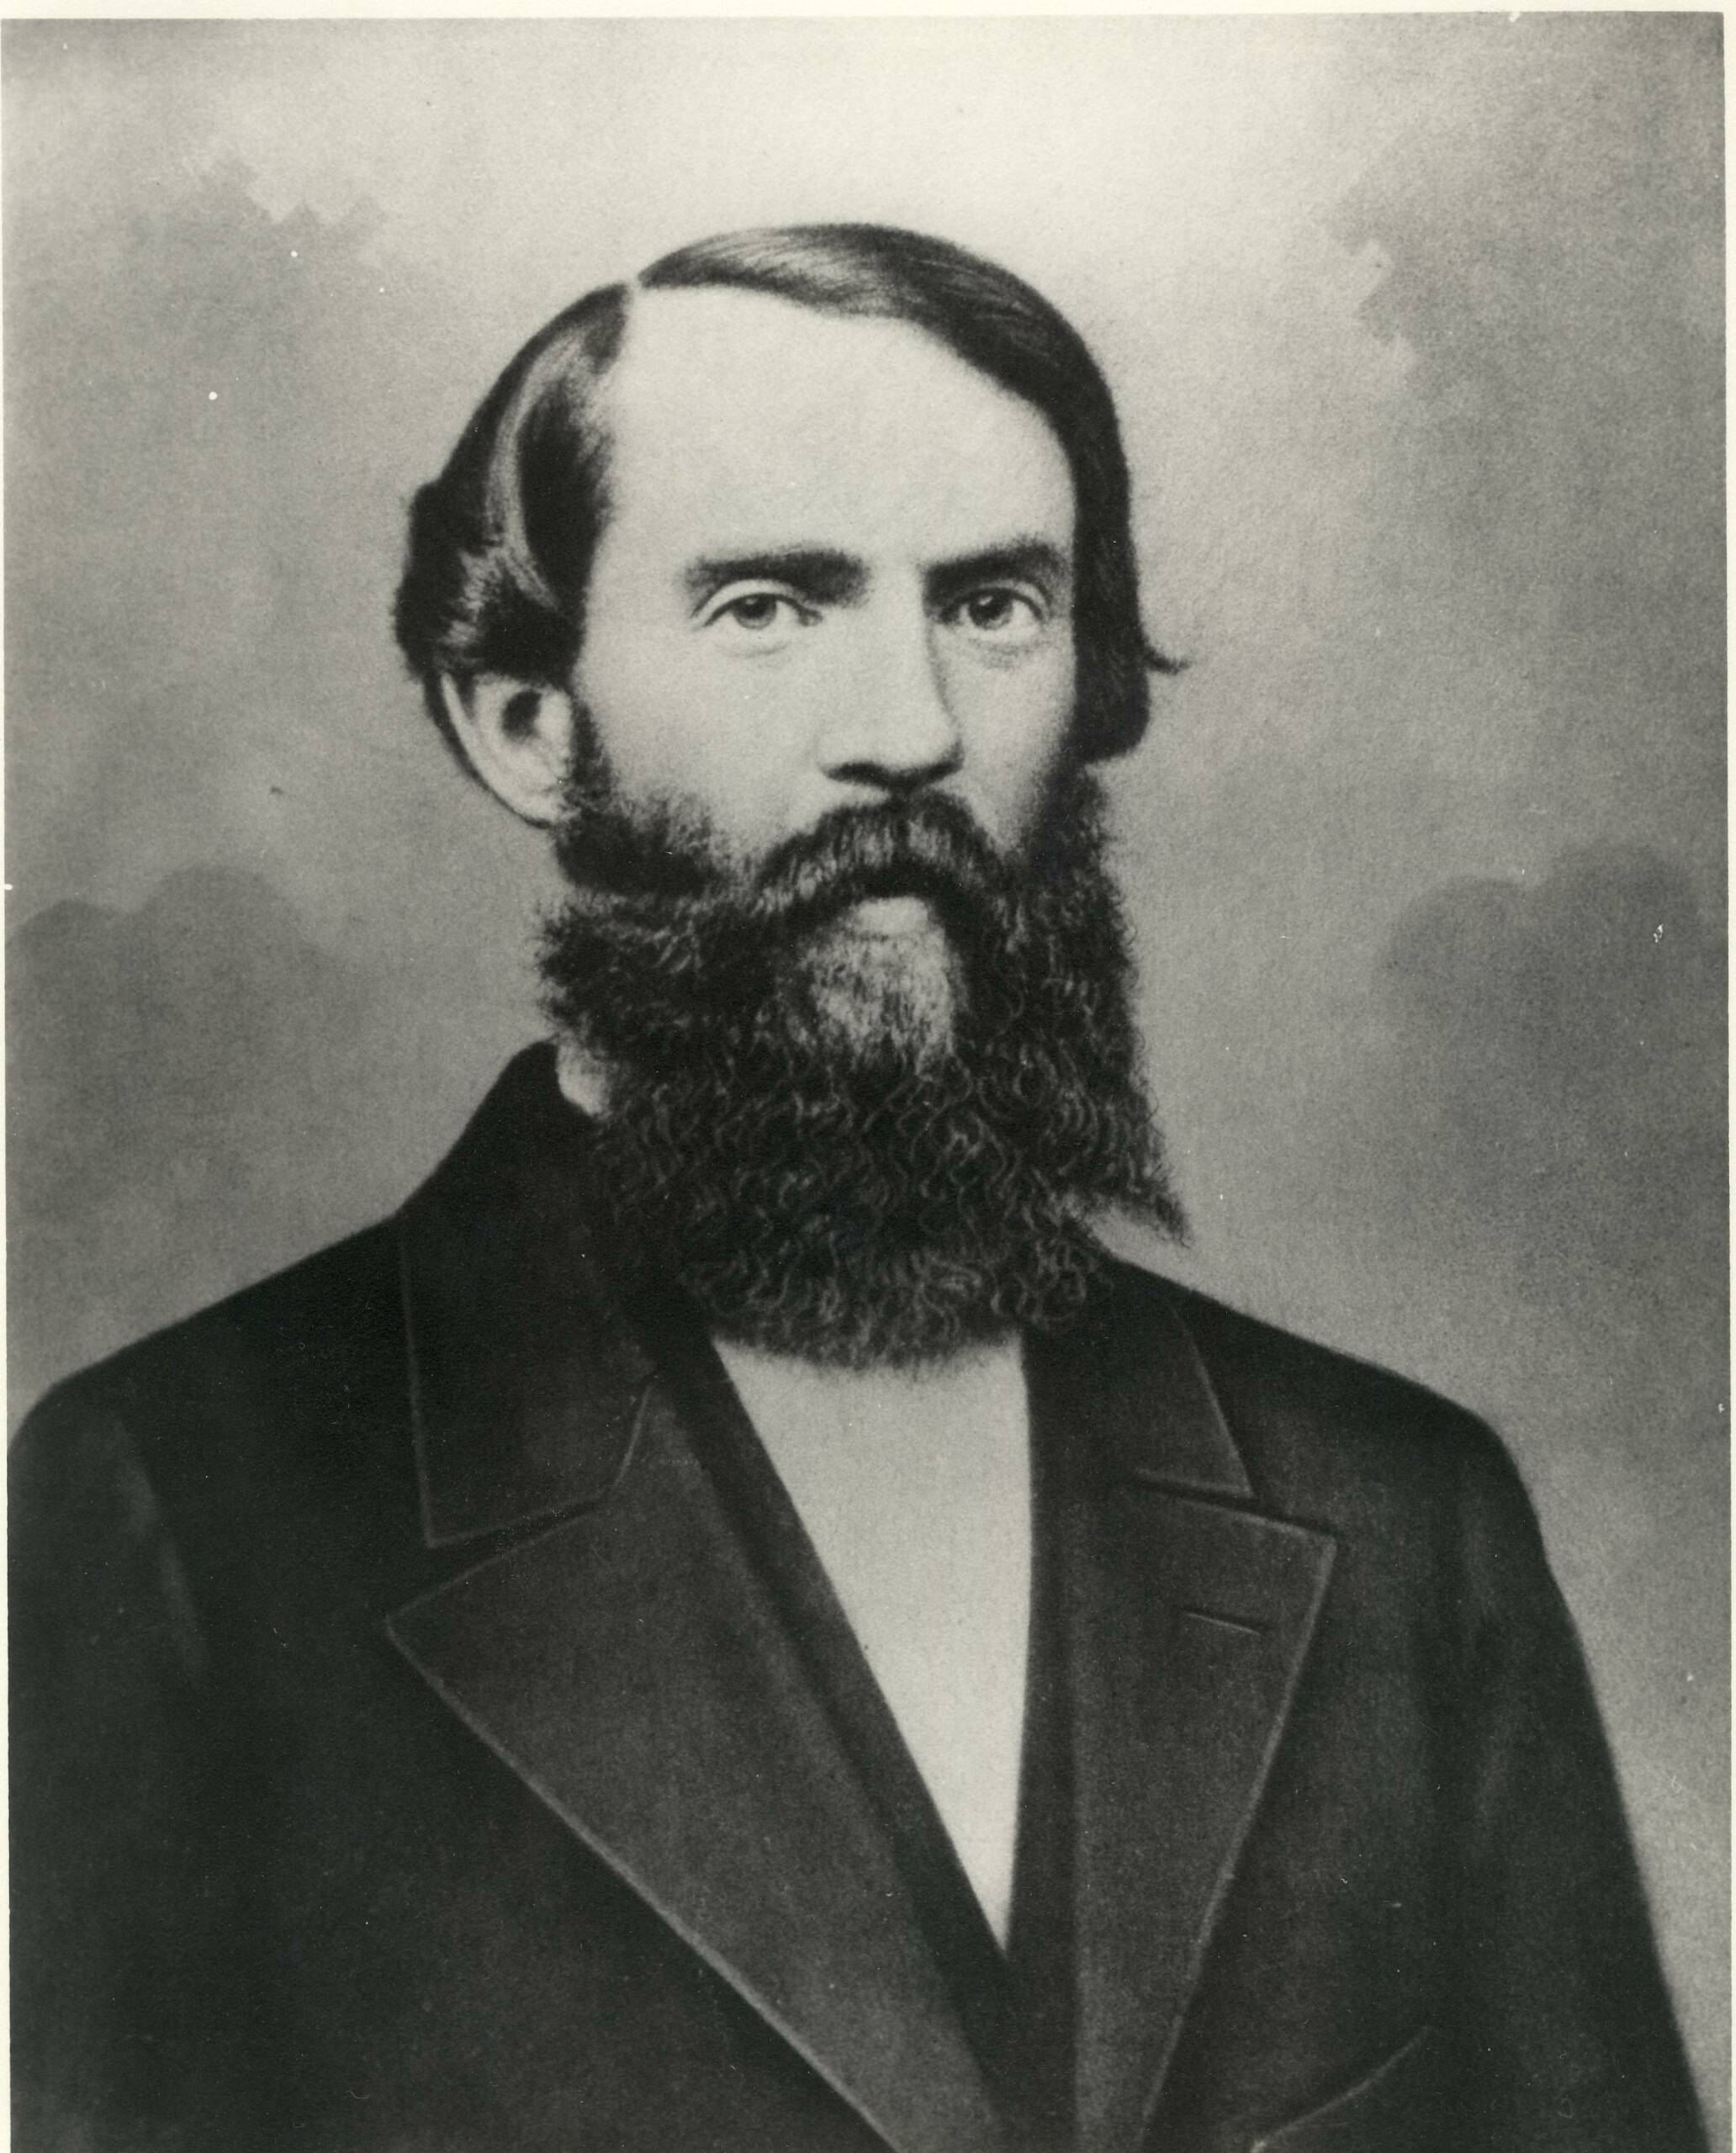 Founder William Henry Letterman